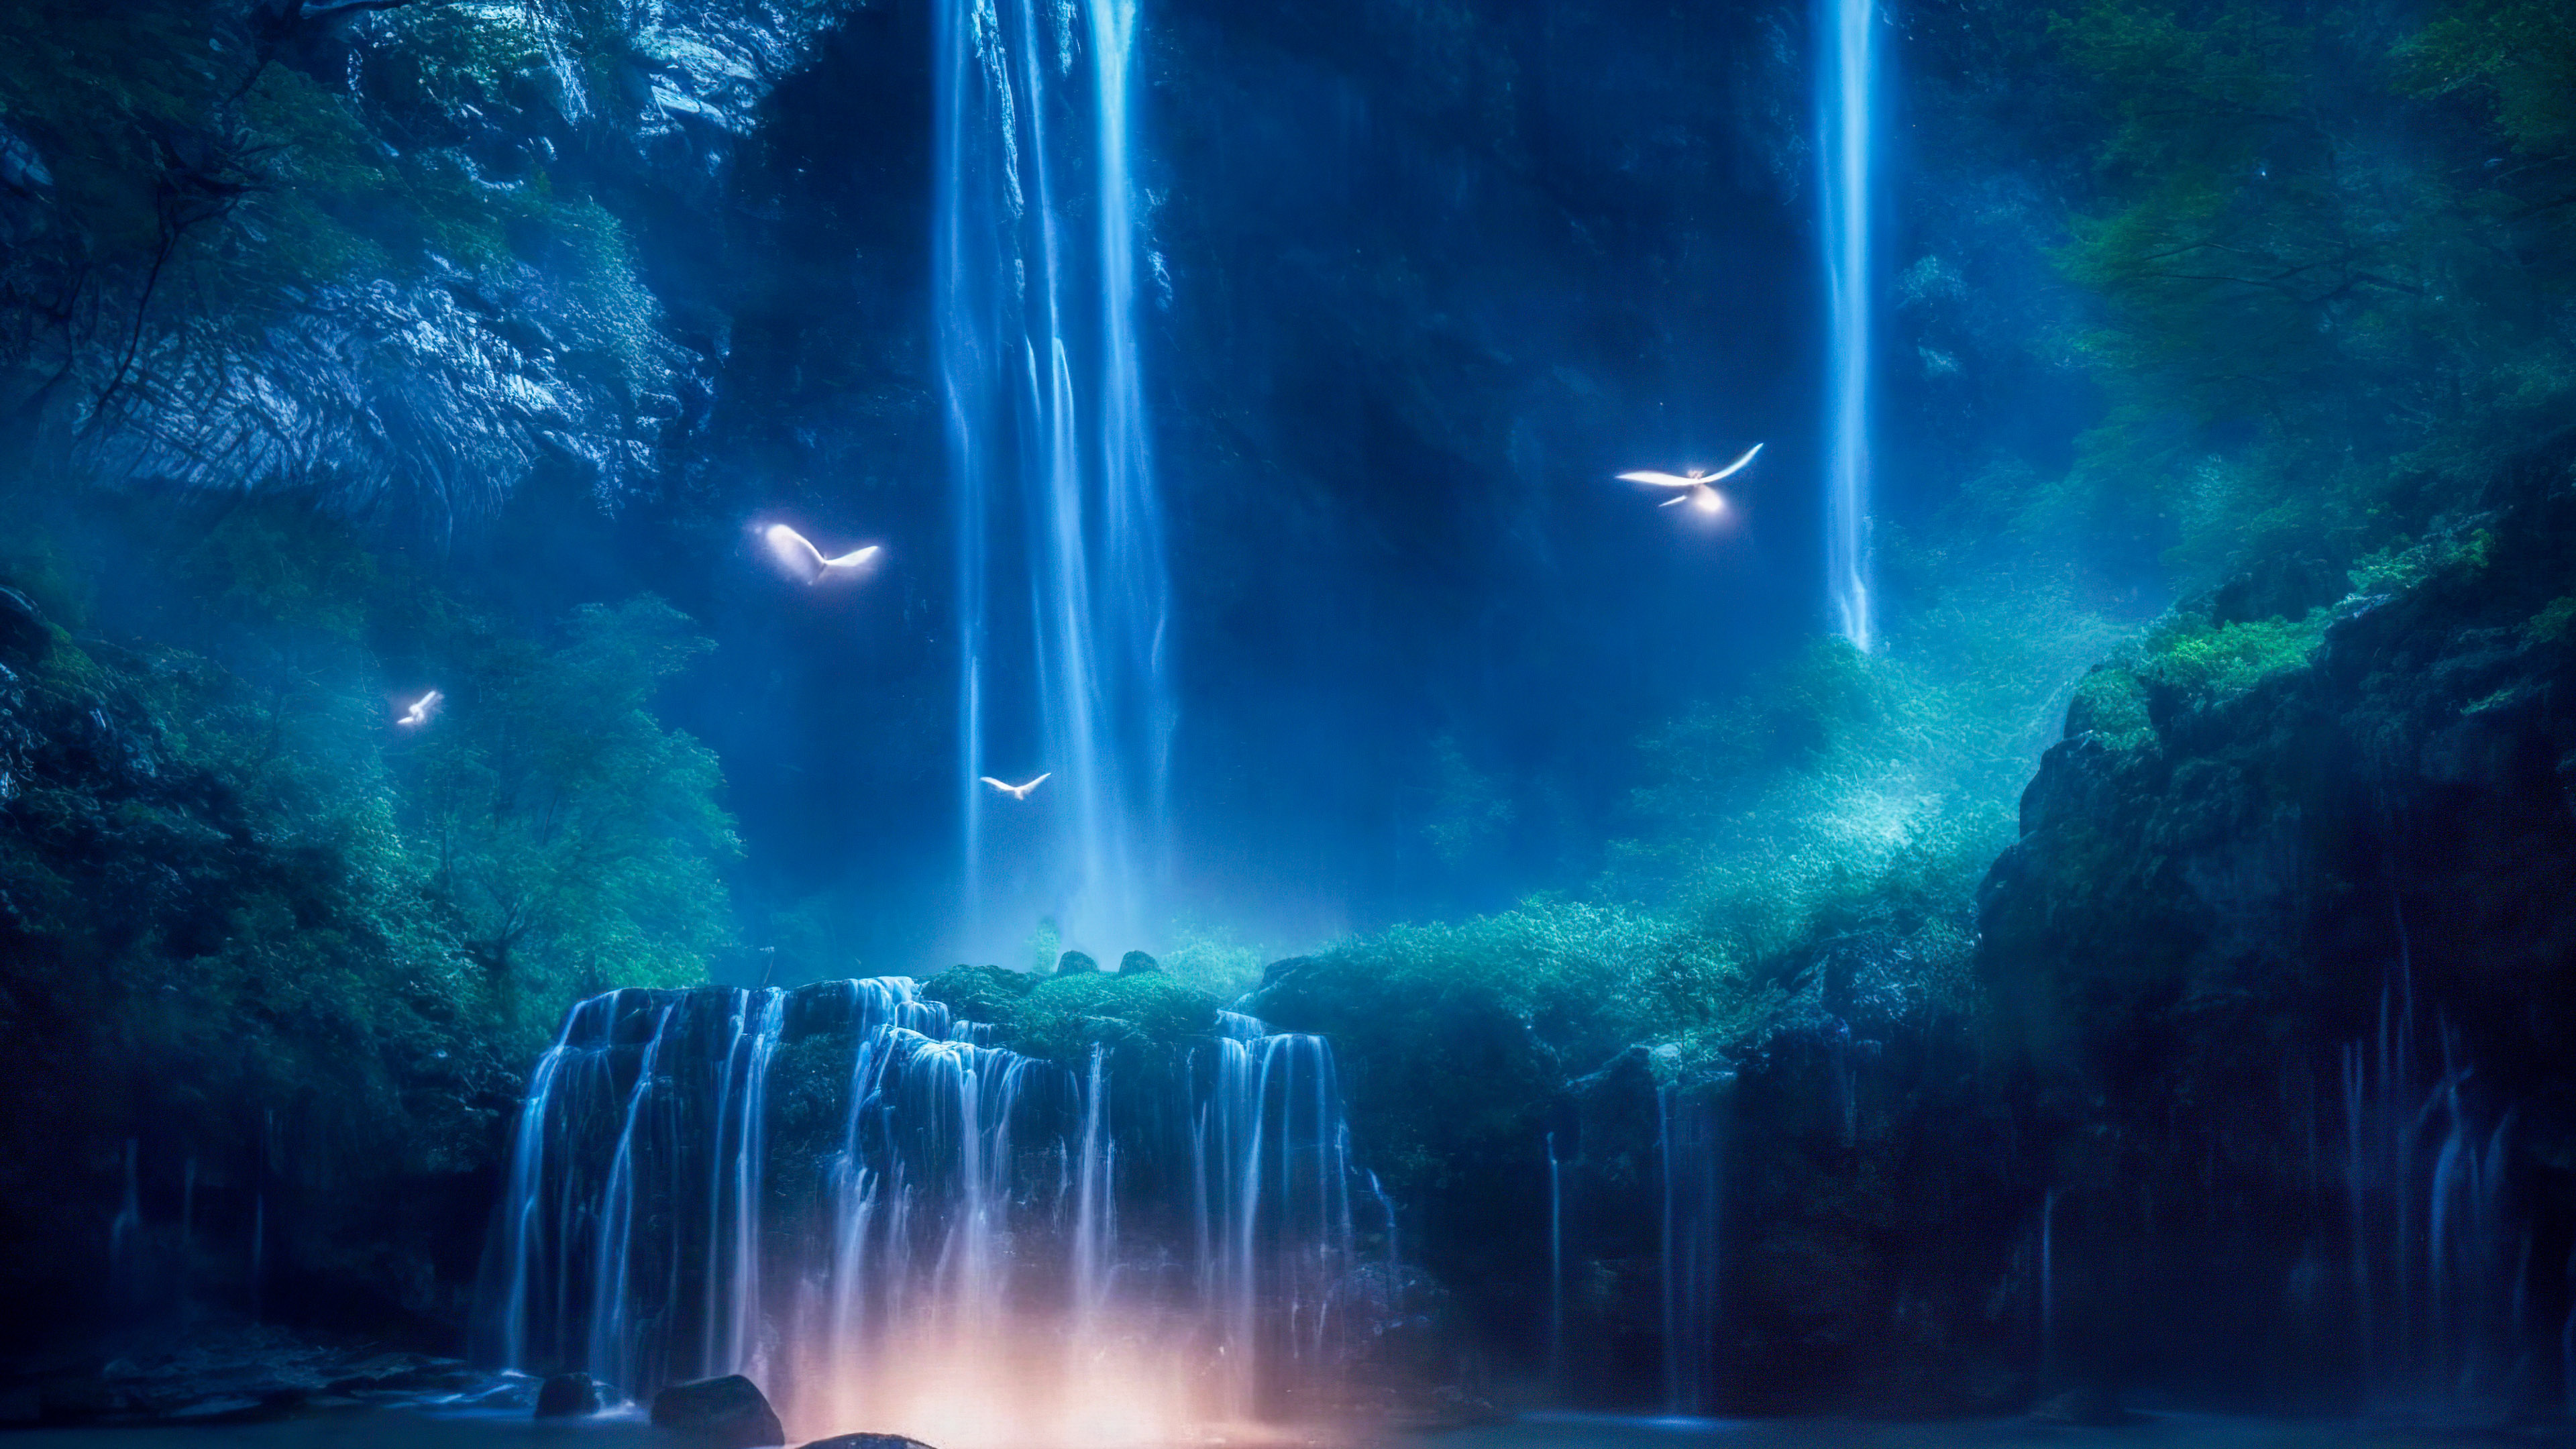 Vivez l'enchantement d'une cascade magique illuminée par le clair de lune, avec des lucioles dansant autour de ses eaux en cascade, à travers notre fond d'écran de nature en 4K pour votre PC.